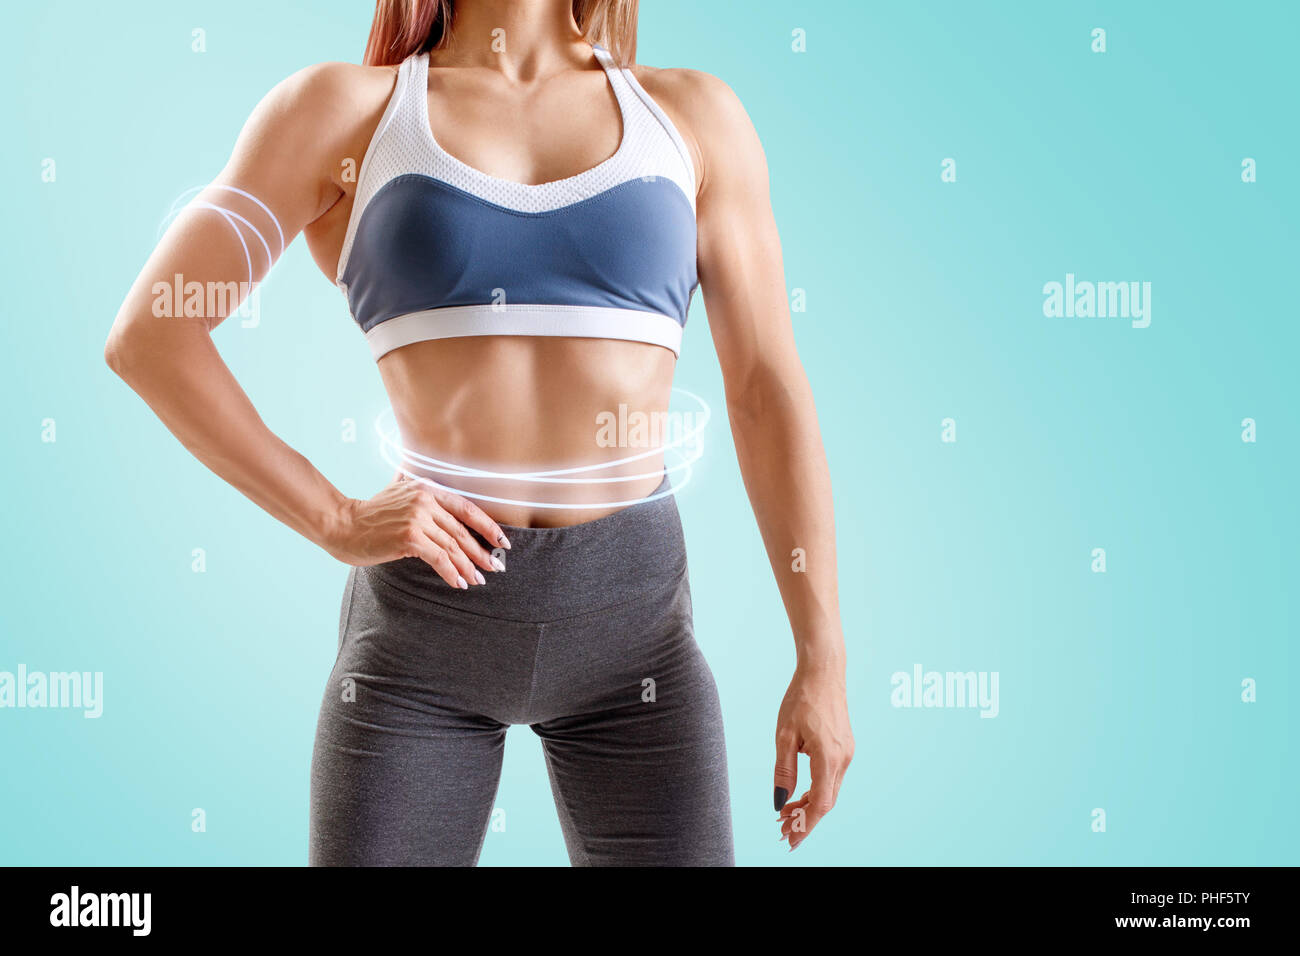 Jeune femme dans les vêtements de sport a démontré son corps athlétique musculaire. Banque D'Images